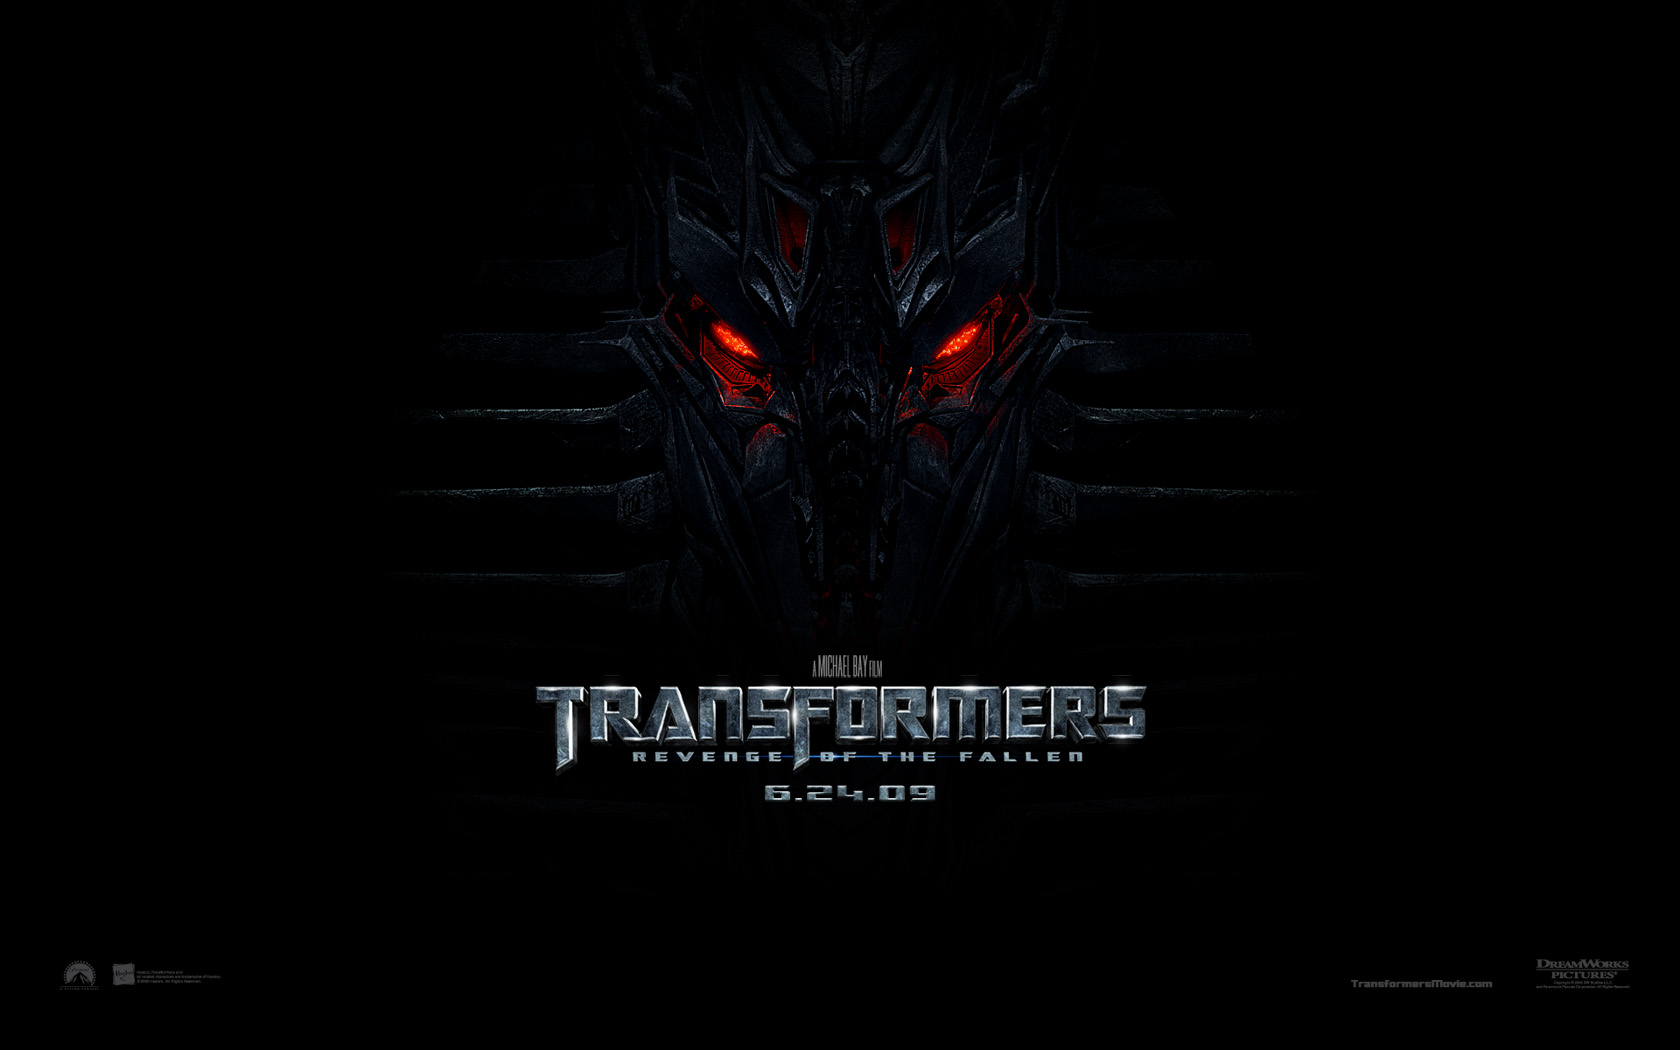 "Transformers: Revenge of the Fallen" desktop wallpaper number 1 (1680 x 1050 pixels)